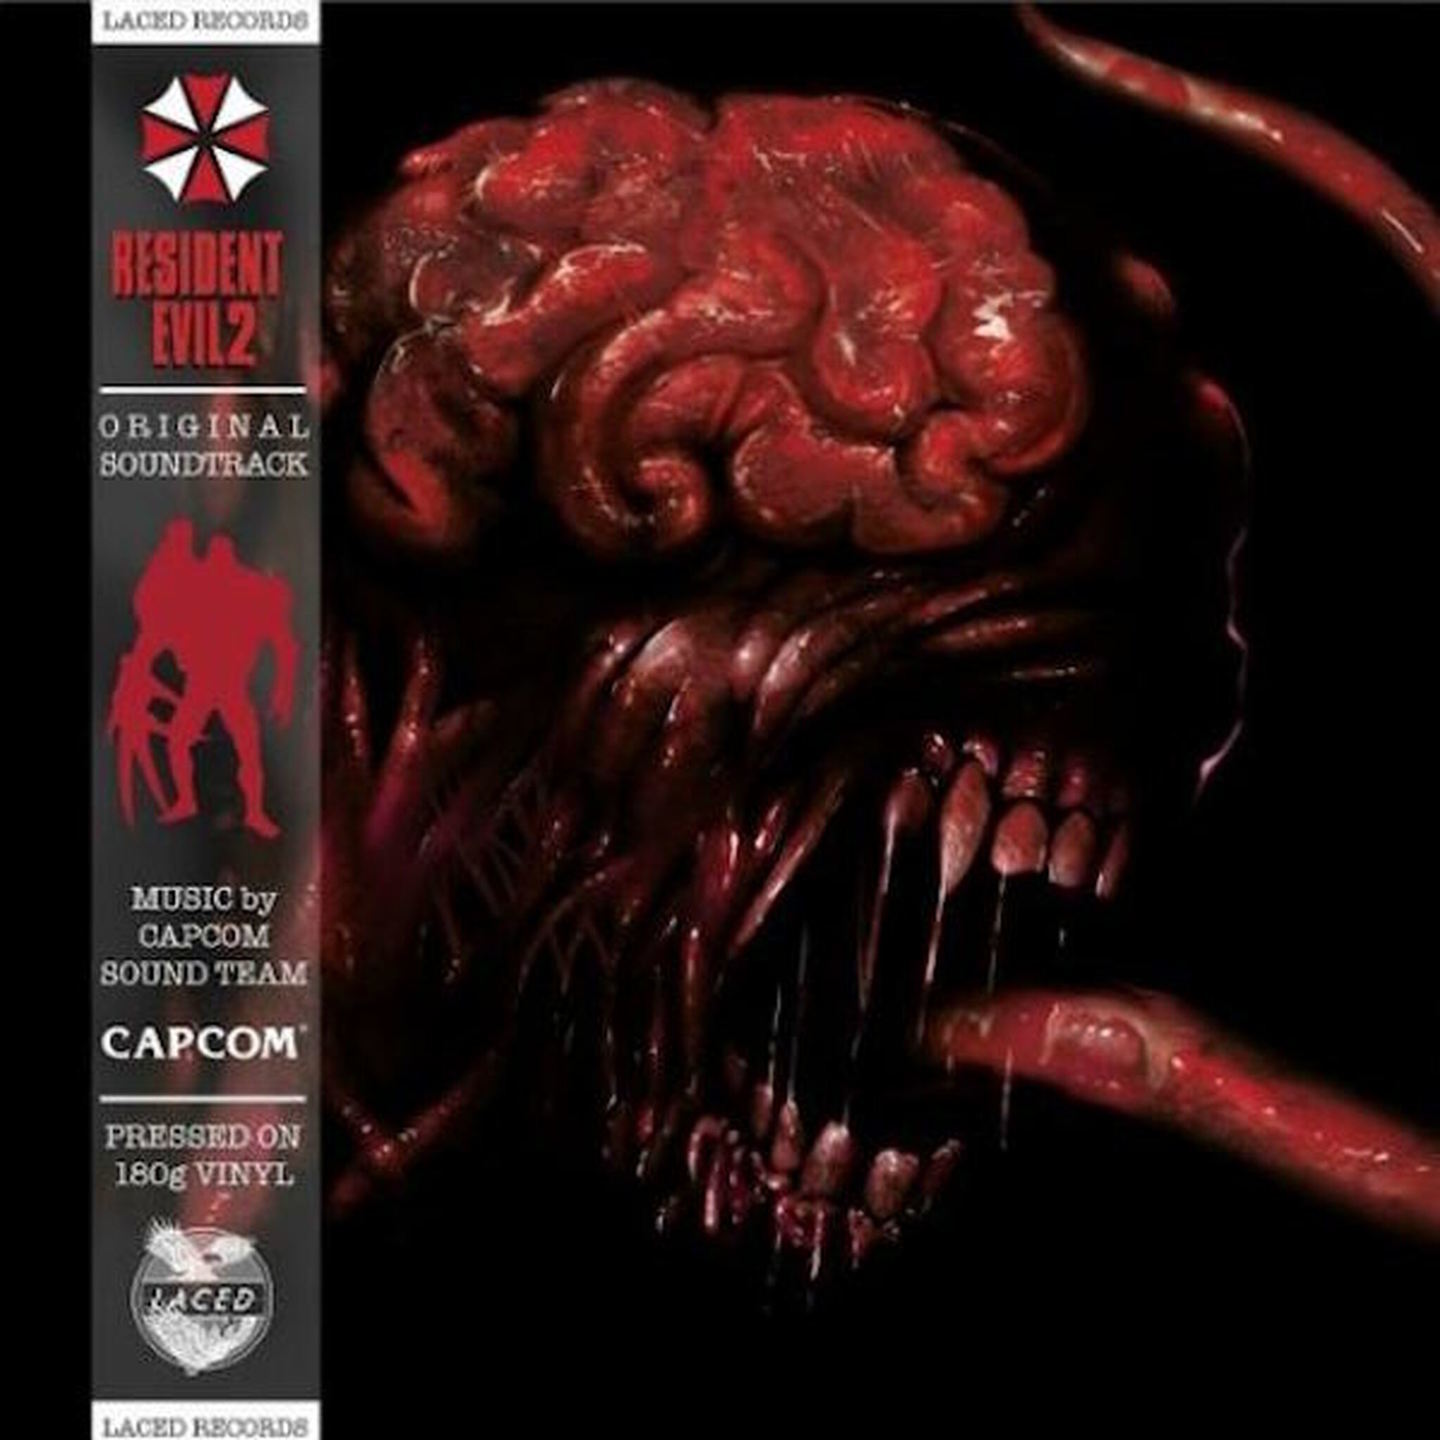 CAPCOM SOUND TEAM - Resident Evil 2 Original Game Soundtrack LP 180g